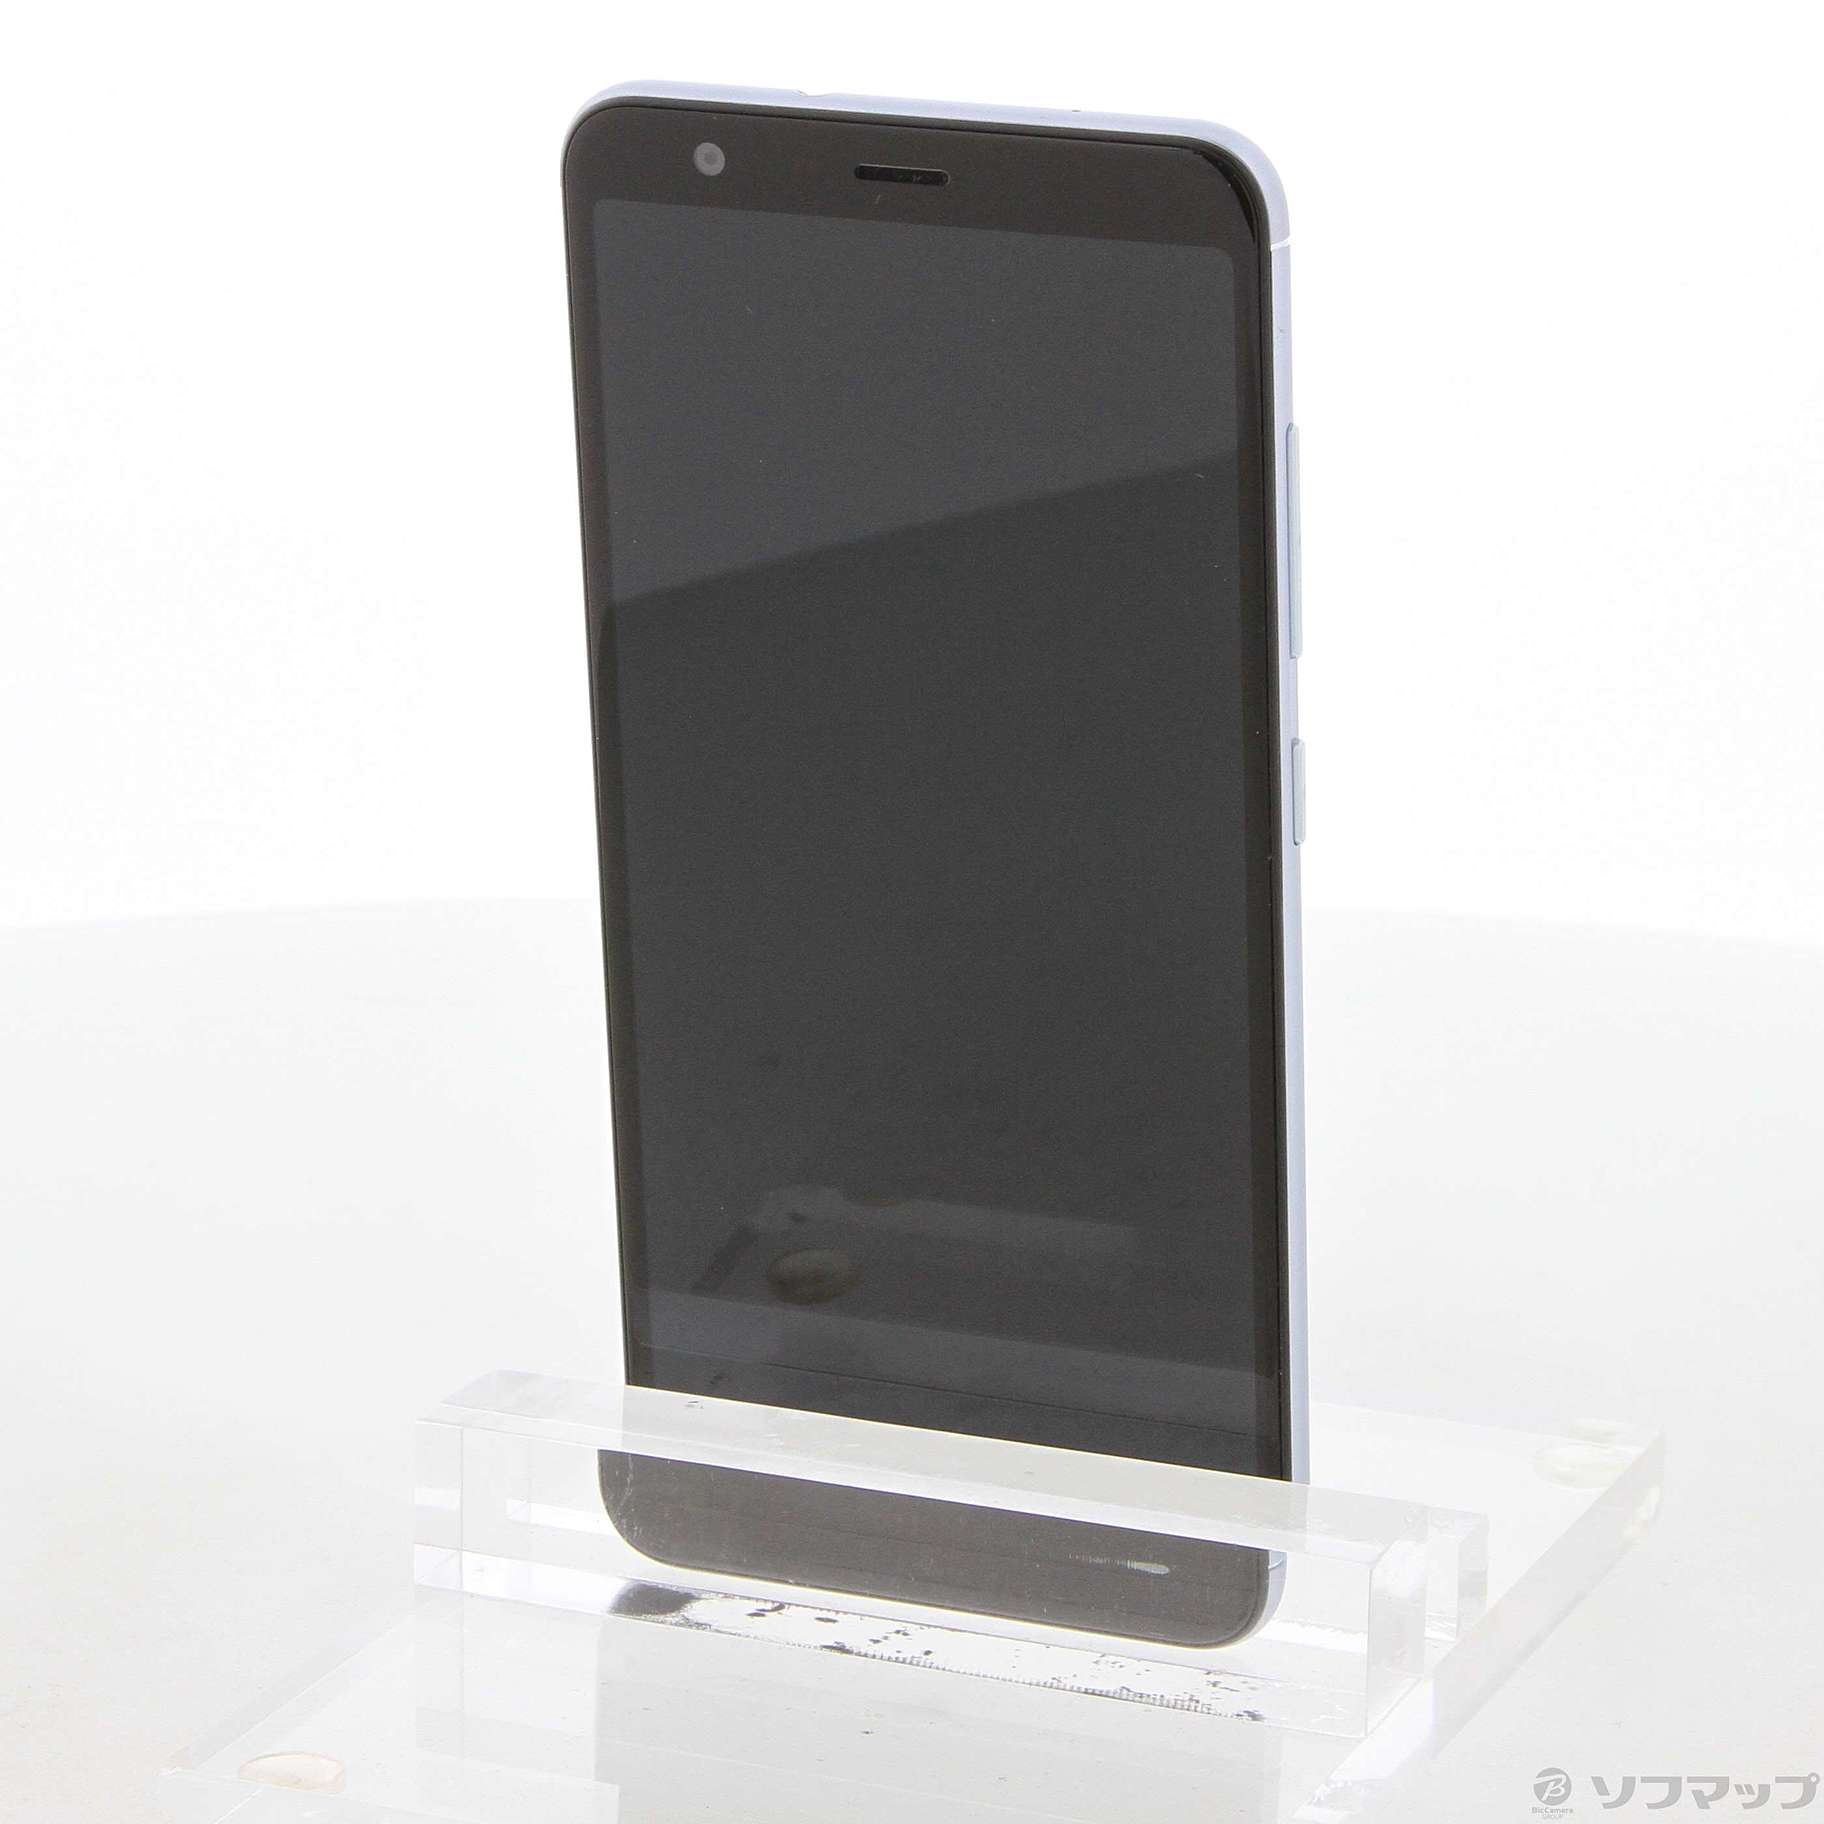 中古】ZenFone Max Plus 32GB アズールシルバー ZB570TL-SL32S4 SIM ...